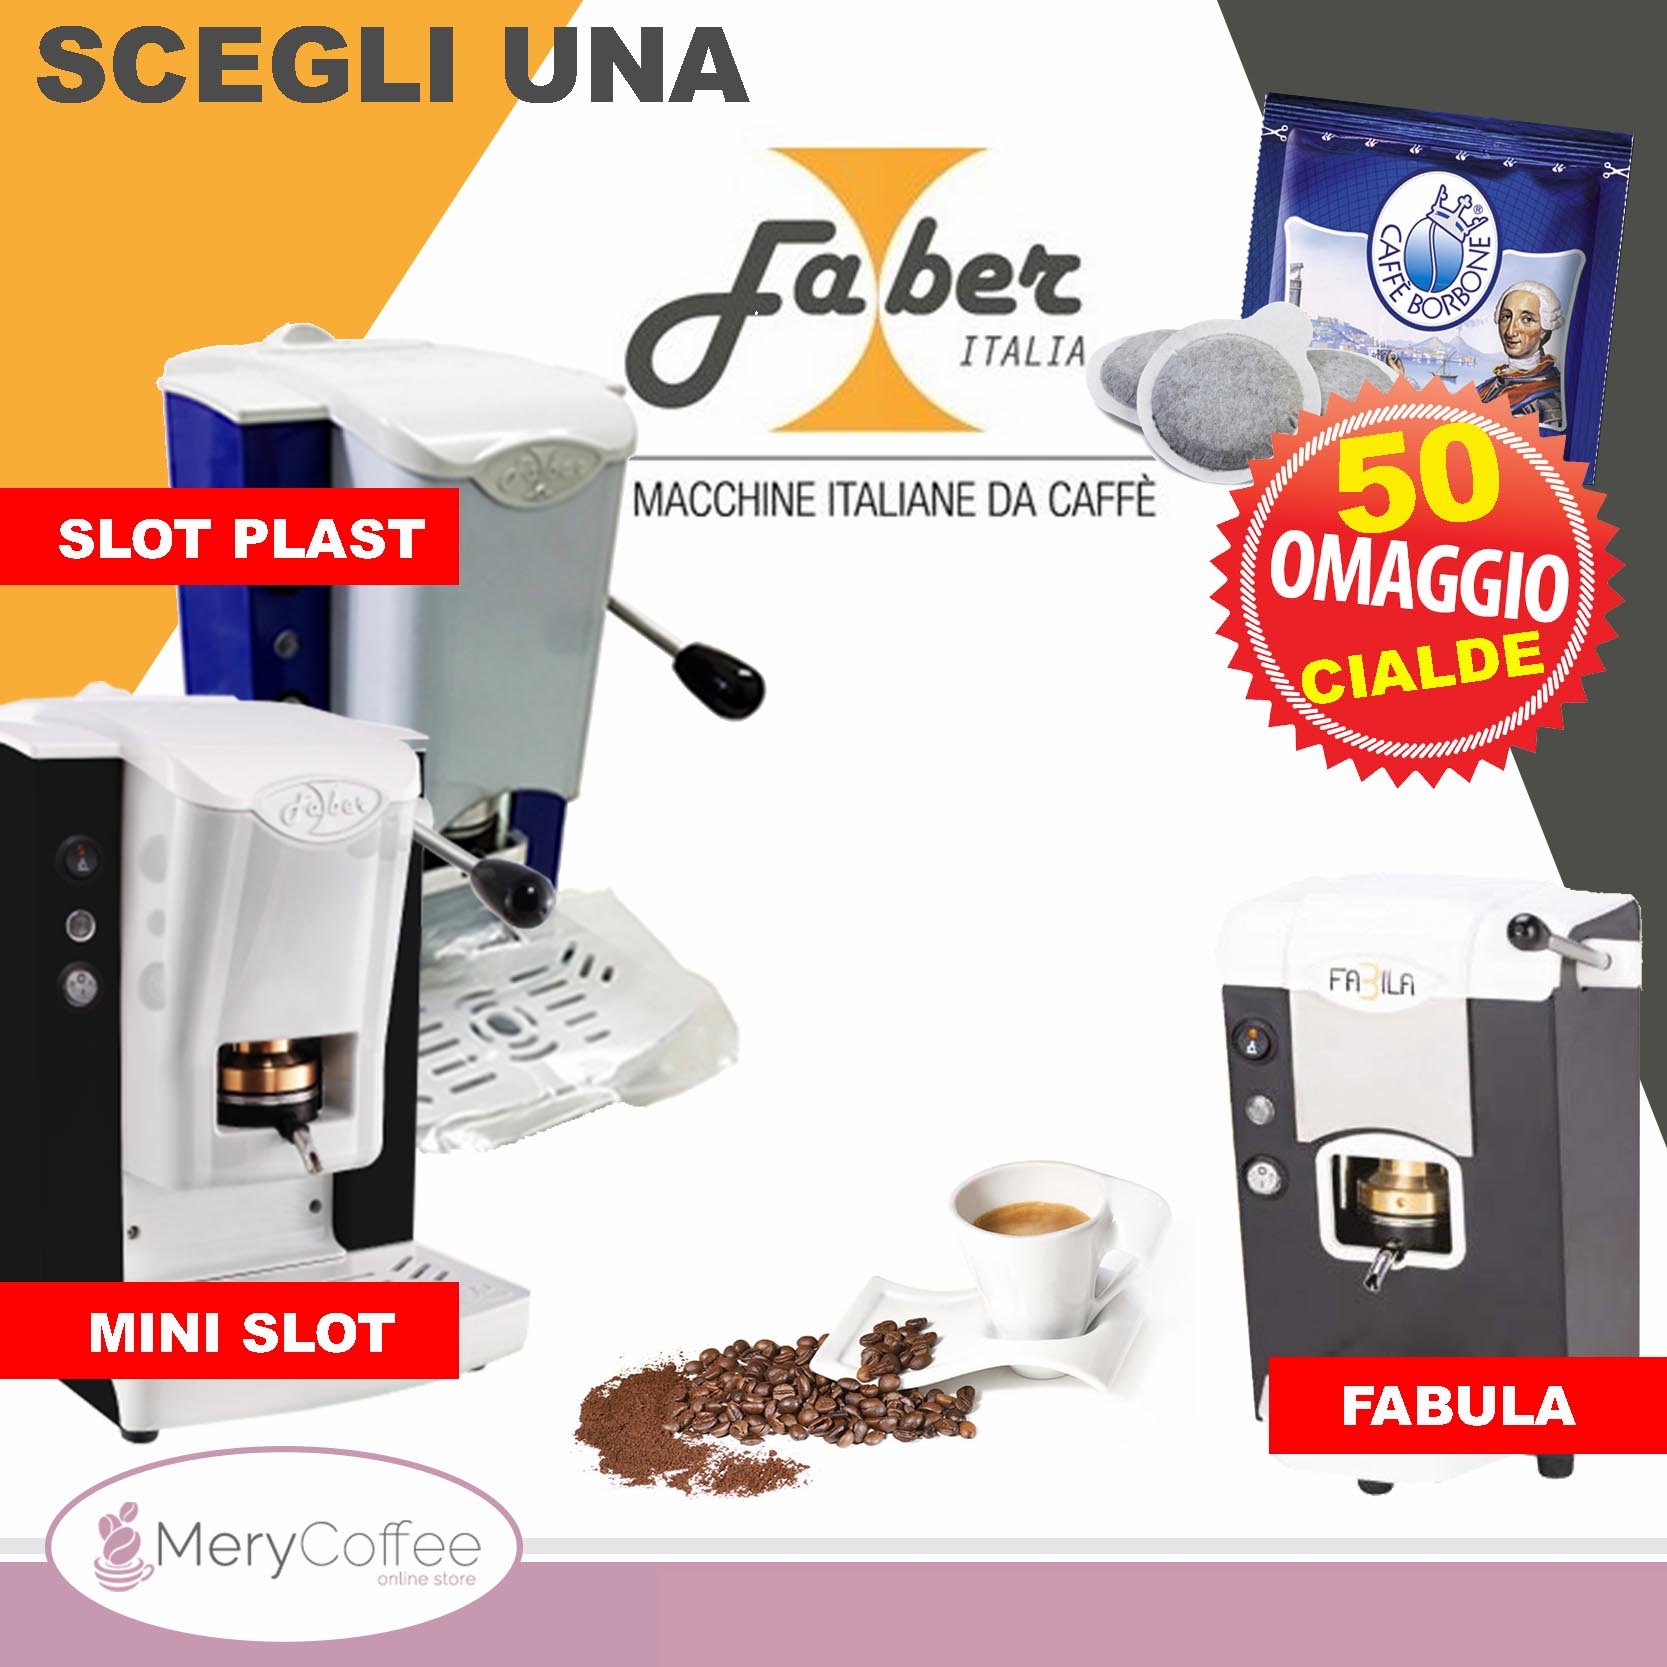 Macchinette del caffè Faber Slot Plast